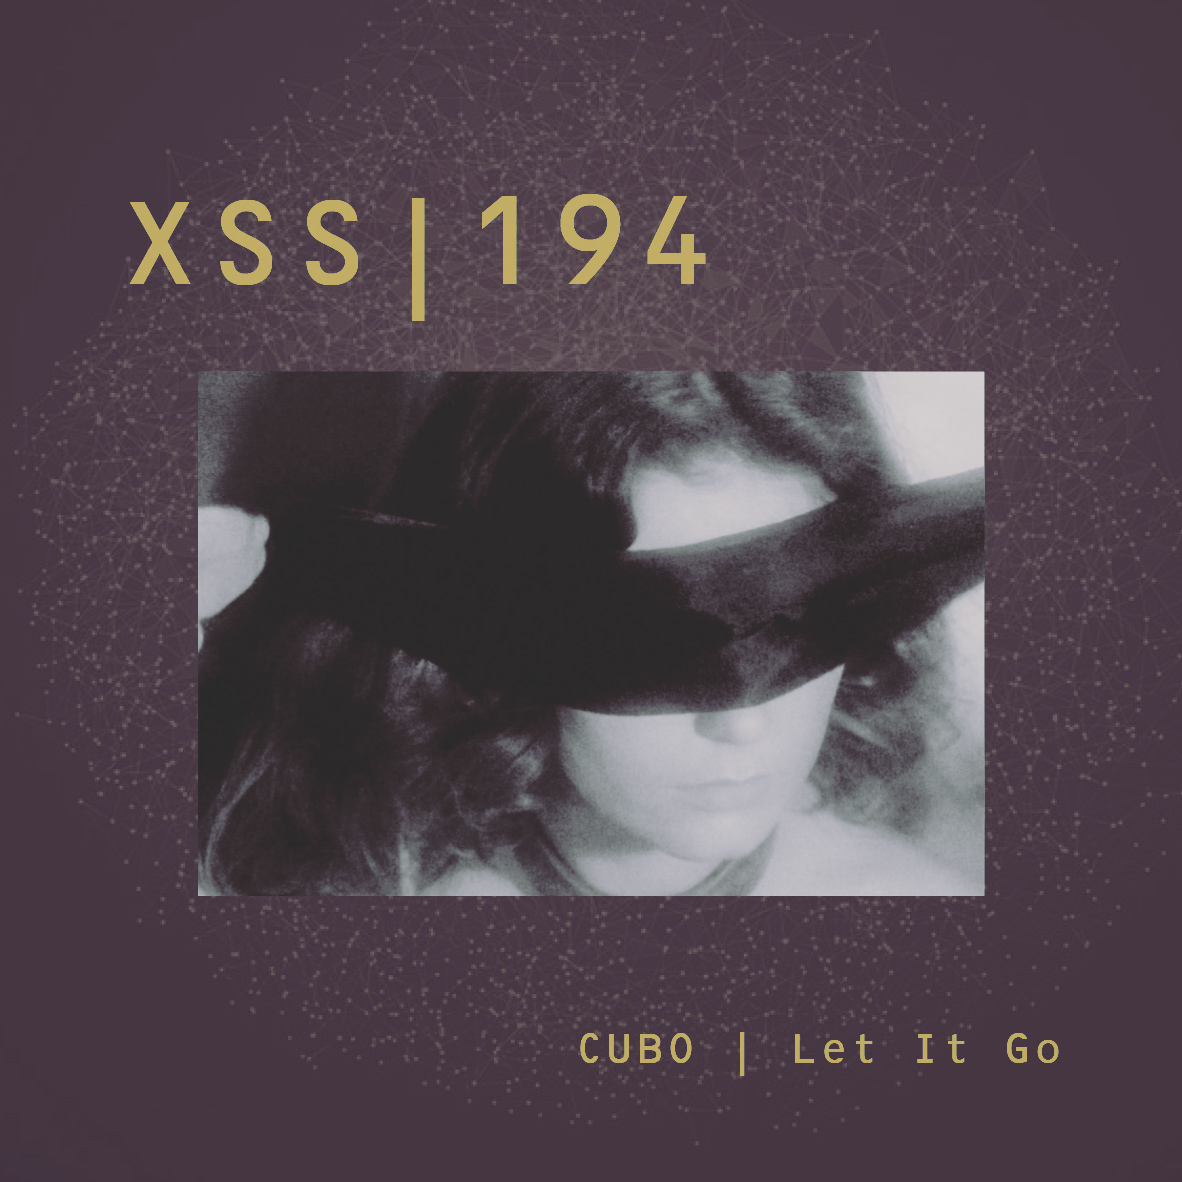 XSS194 | Cubo | Let It Go